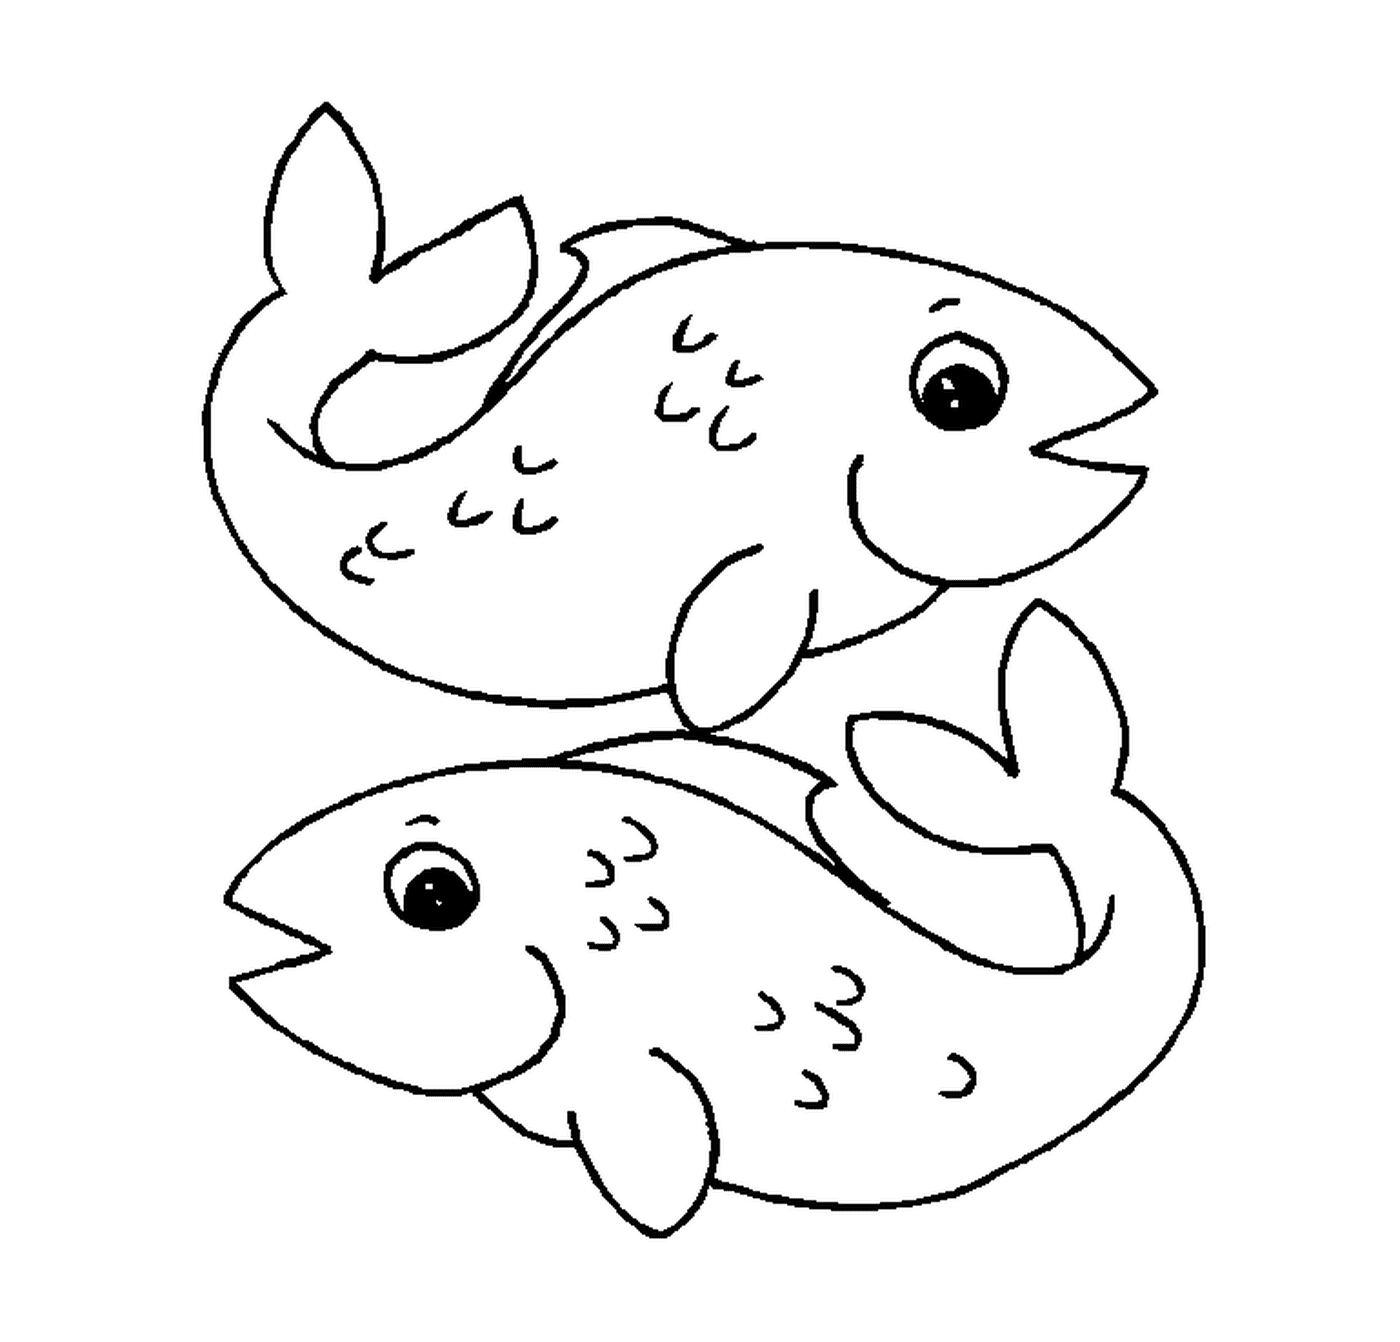  Два спутника, плавающие рыбу 